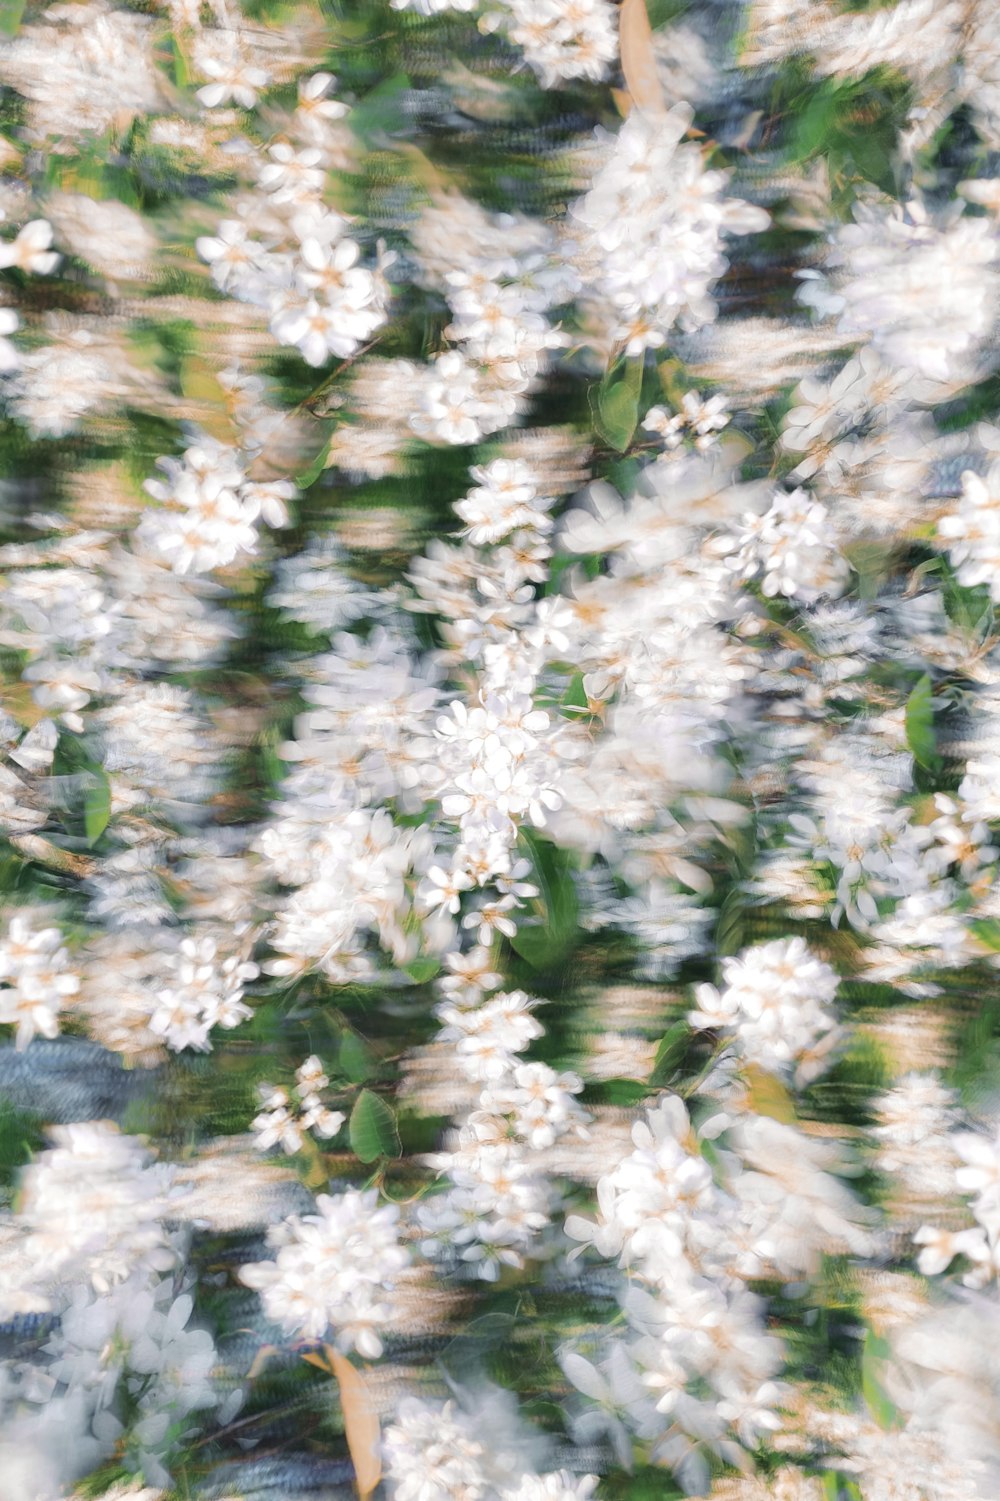 녹색 잎이 있는 흰 꽃의 흐릿한 사진